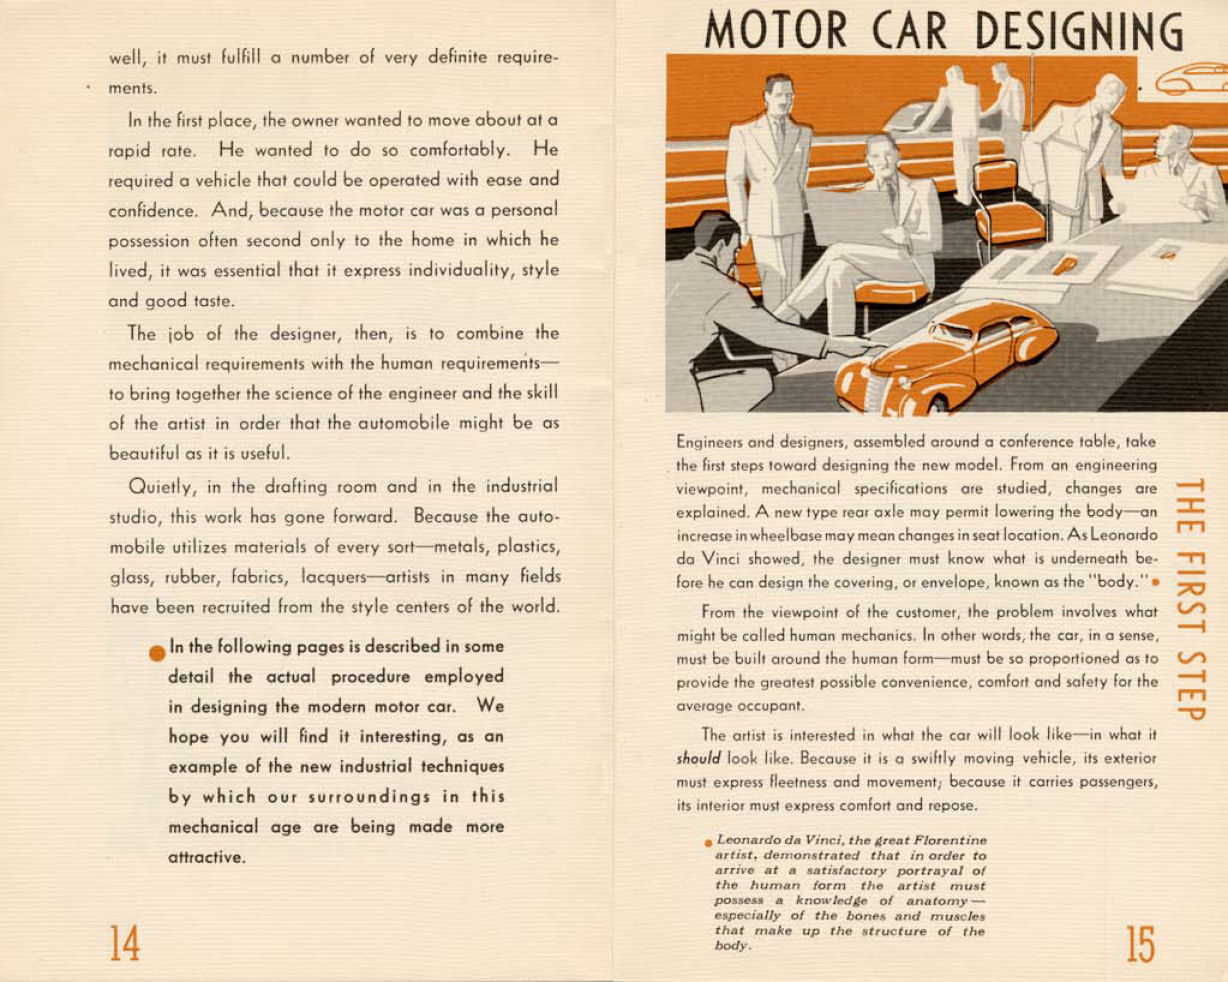 n_1938-Modes and Motors-14-15.jpg